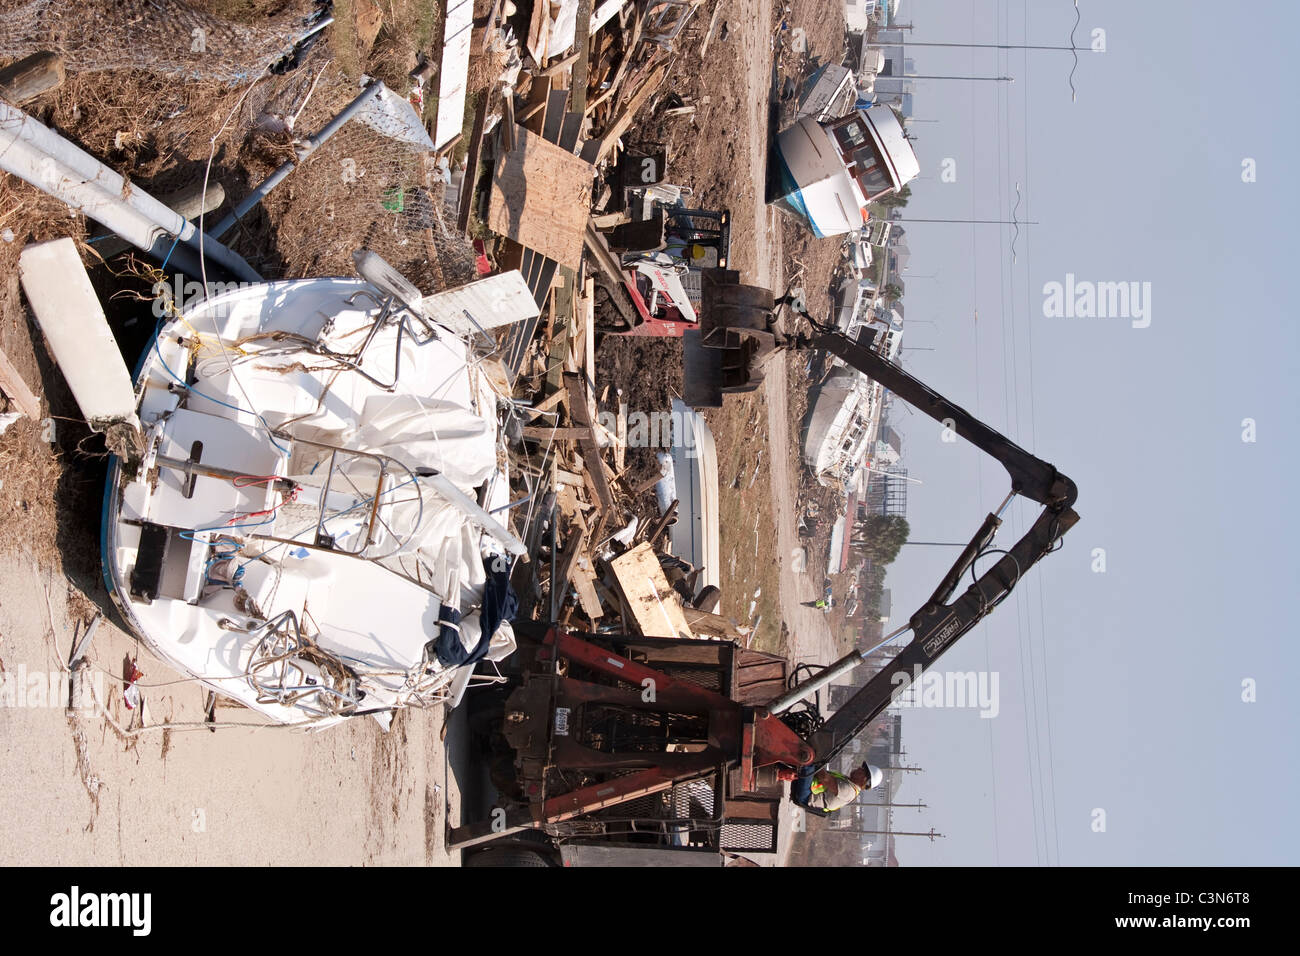 Grúa de elevación restos del montón de destrucción dejada por el huracán categoría 4 Ike en Galveston, Texas, en septiembre de 2008 Foto de stock